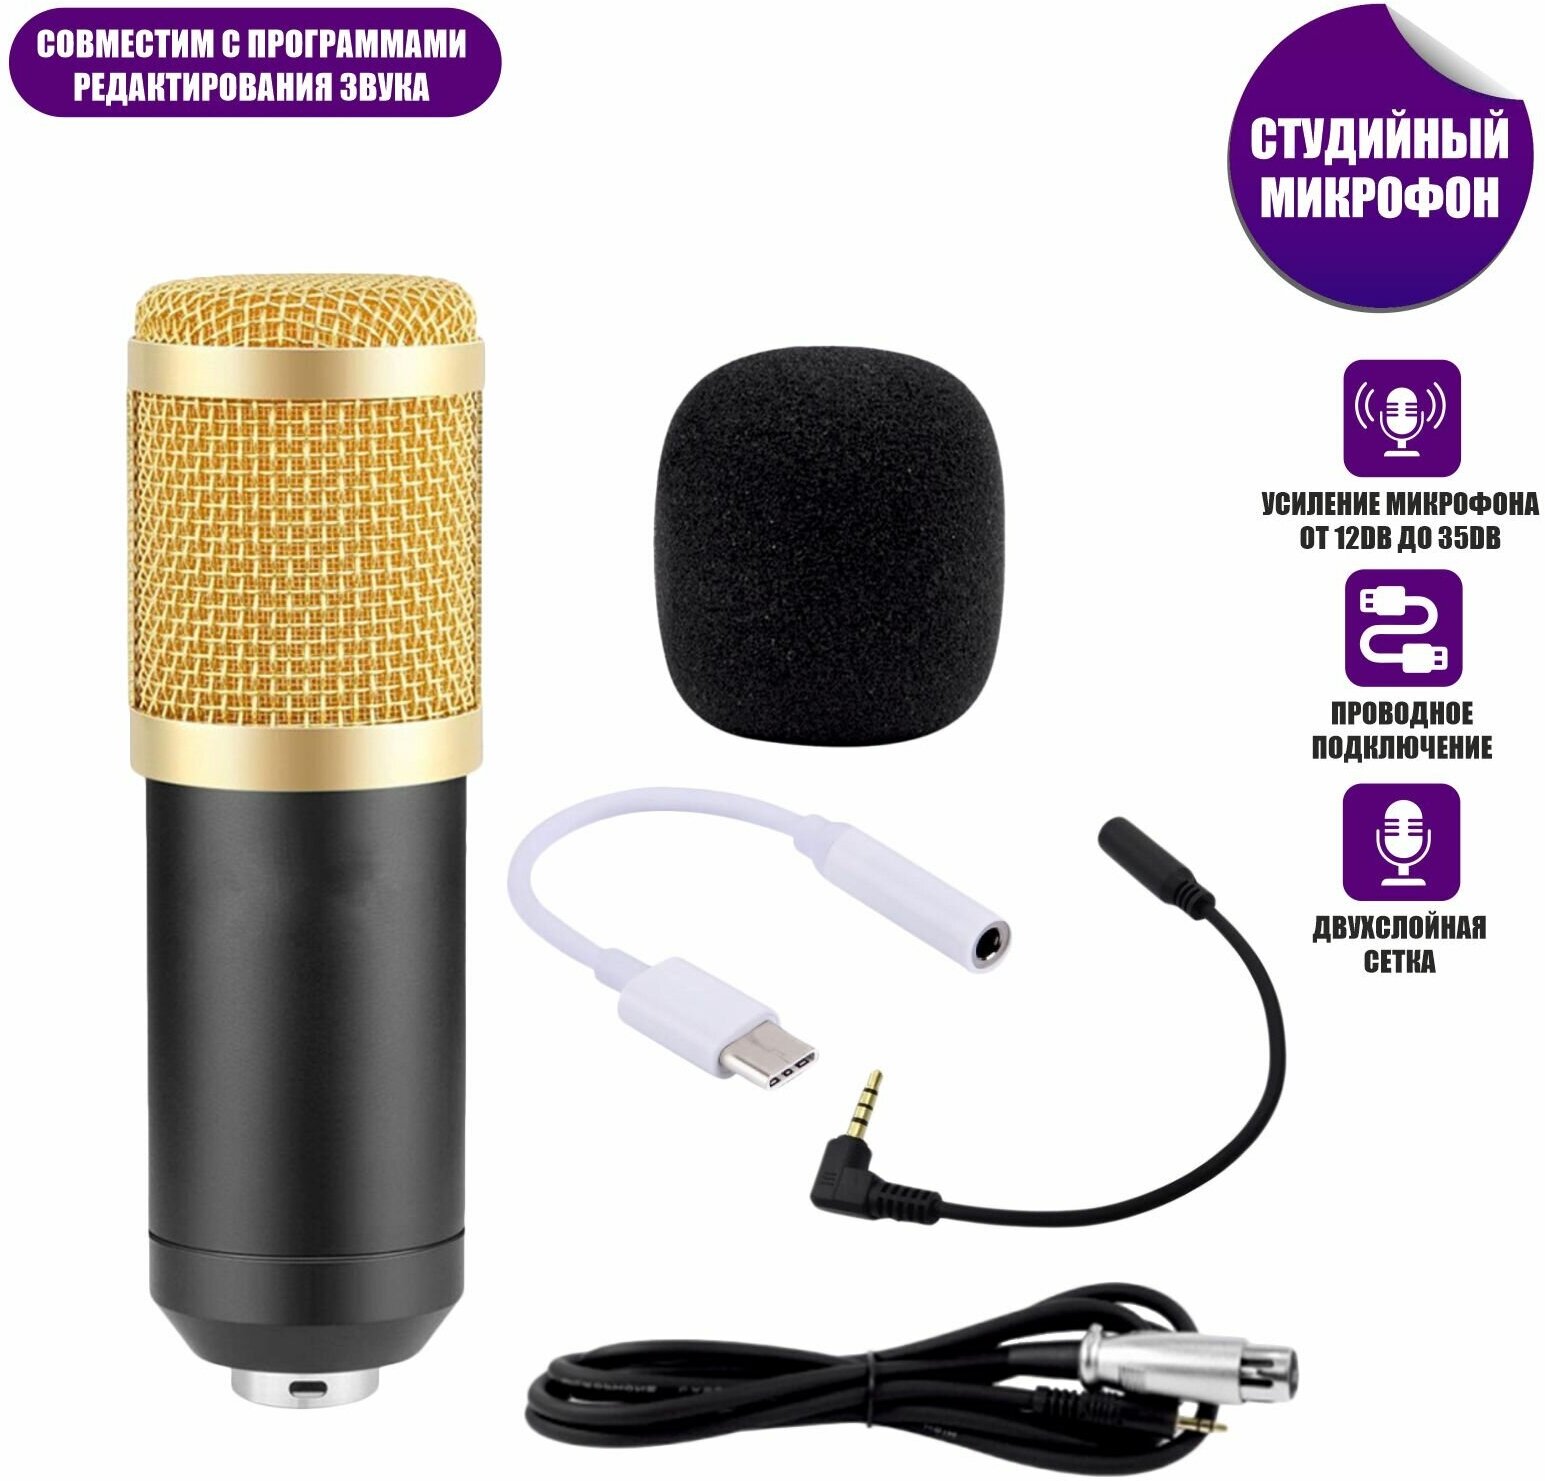 Микрофон BM-800 конденсаторный с ветрозащитой кабелем и переходником Type-C для подключения к телефону, черно-золотой